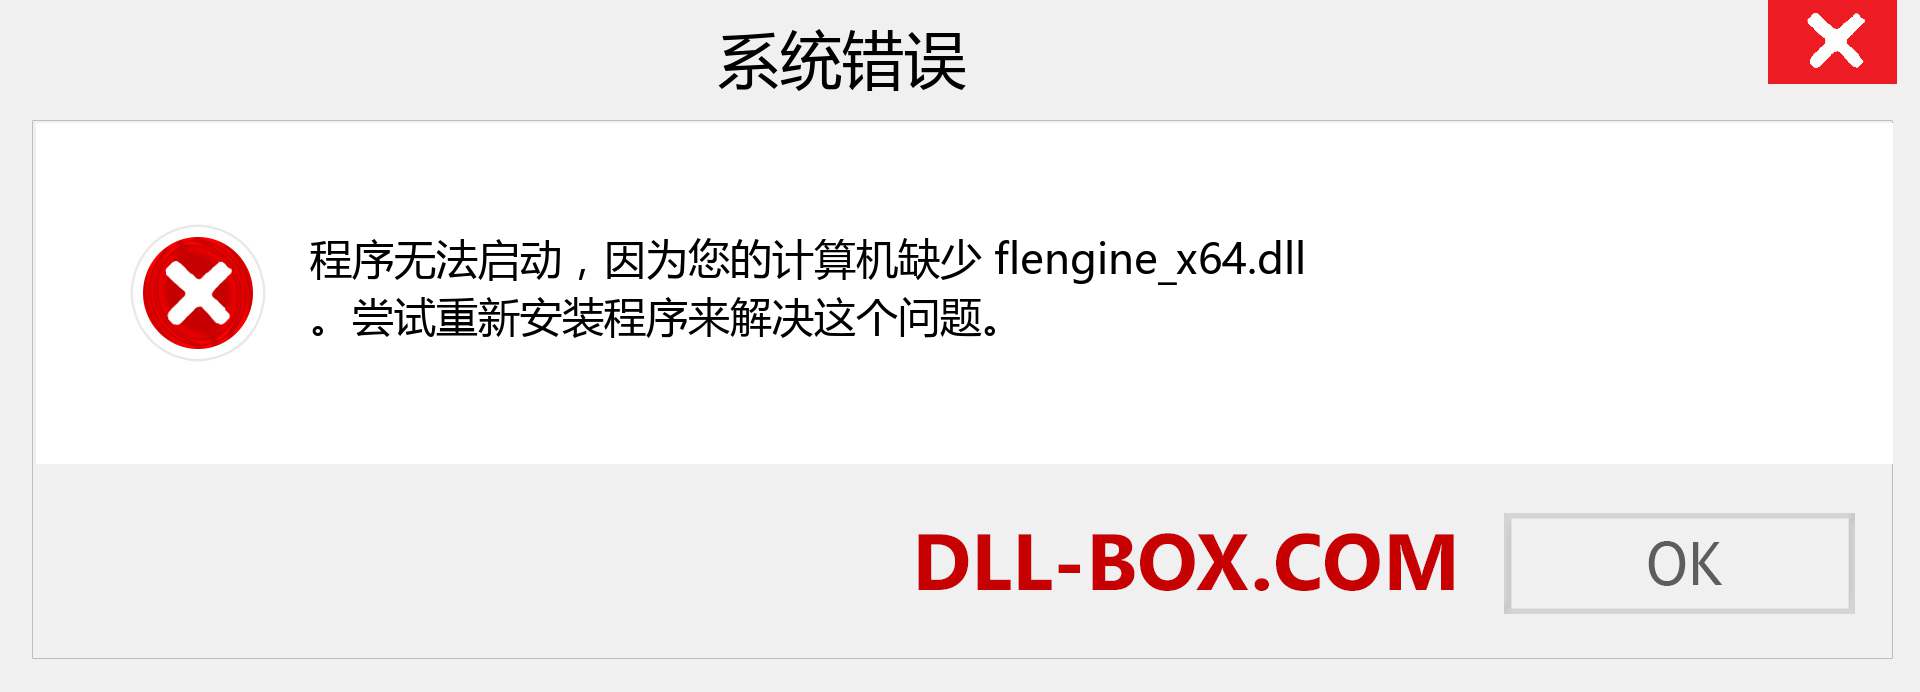 flengine_x64.dll 文件丢失？。 适用于 Windows 7、8、10 的下载 - 修复 Windows、照片、图像上的 flengine_x64 dll 丢失错误